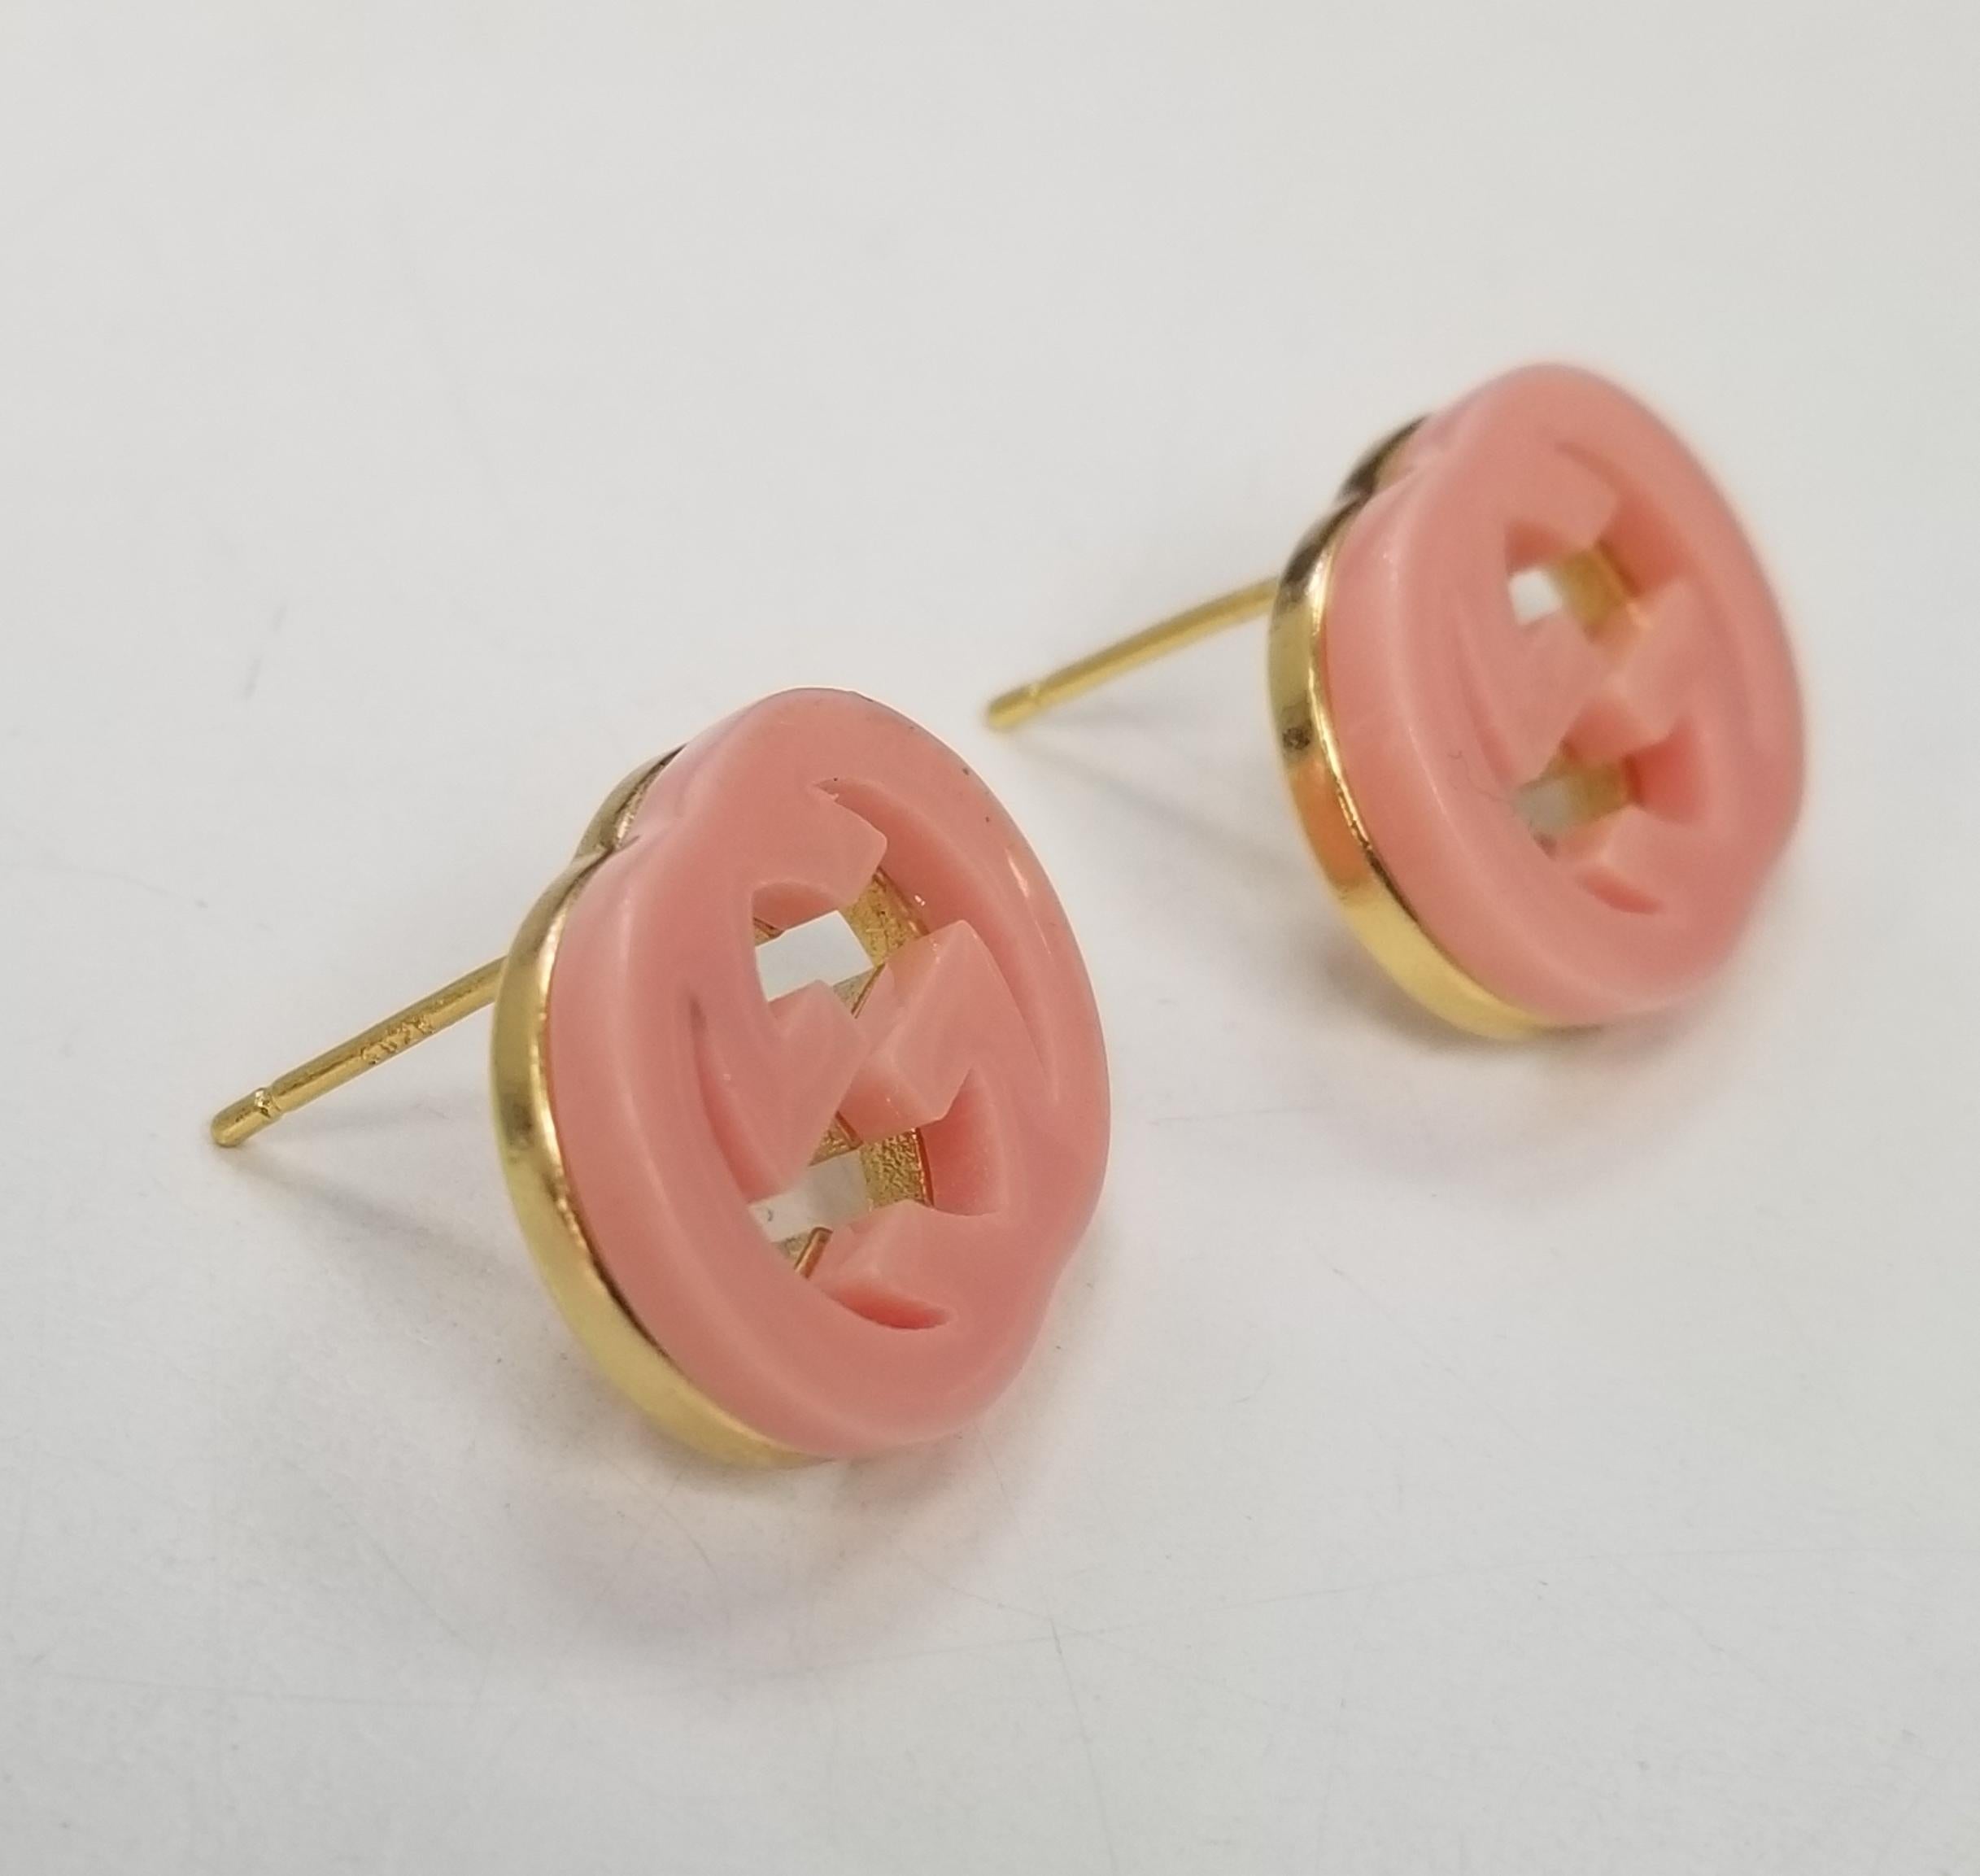 Vergoldete rosa Emaille-Ohrringe von Gucci mit 